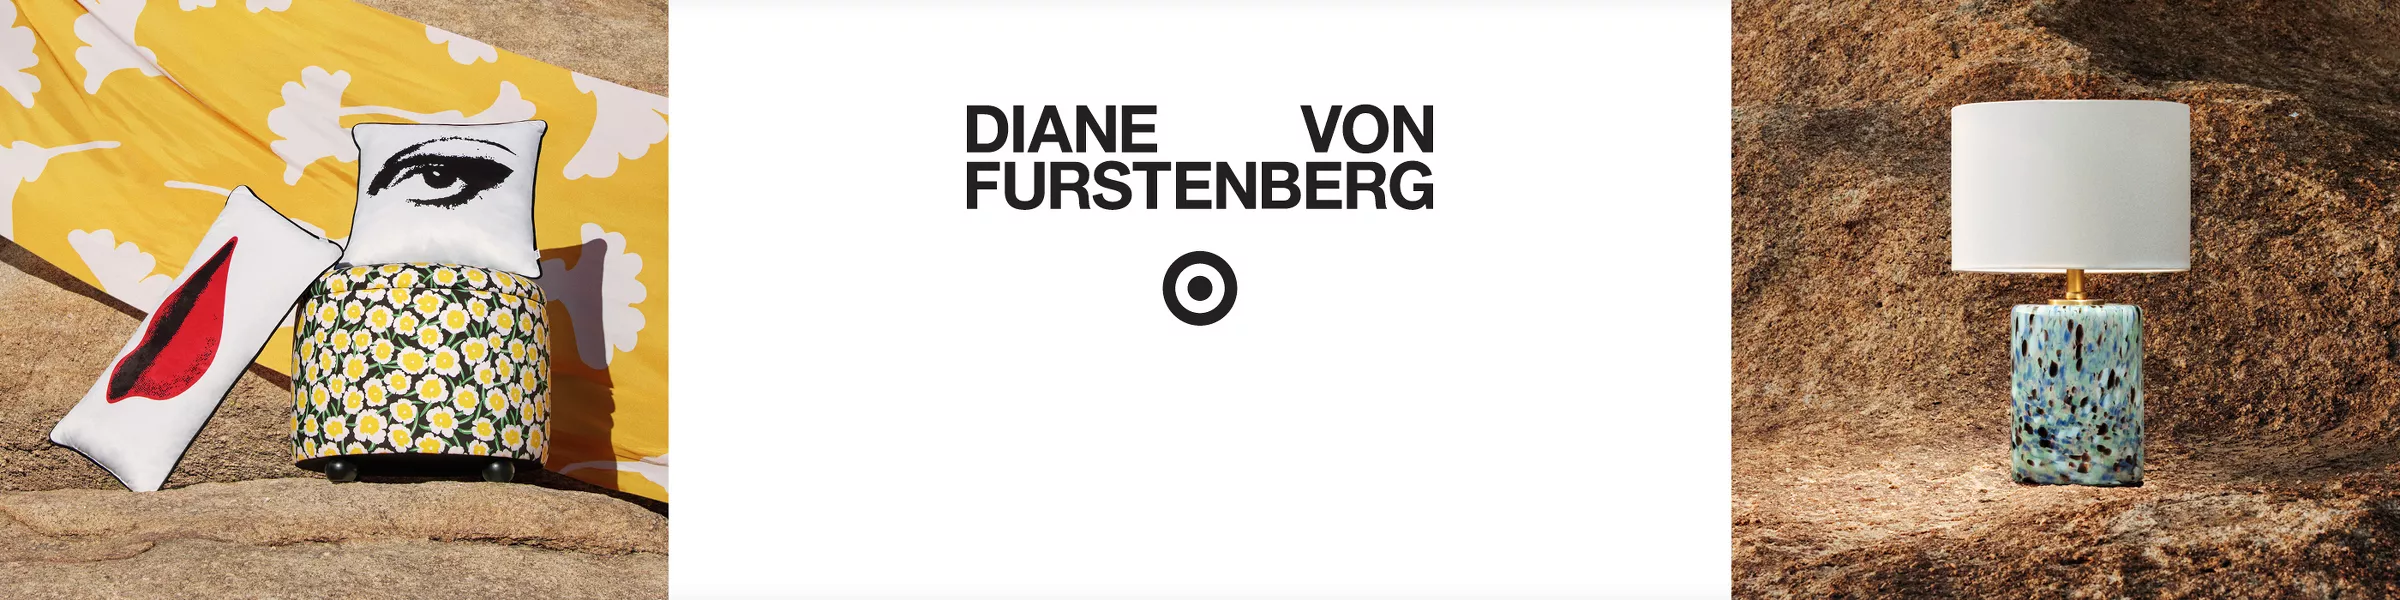 Diane von Furstenberg for Target